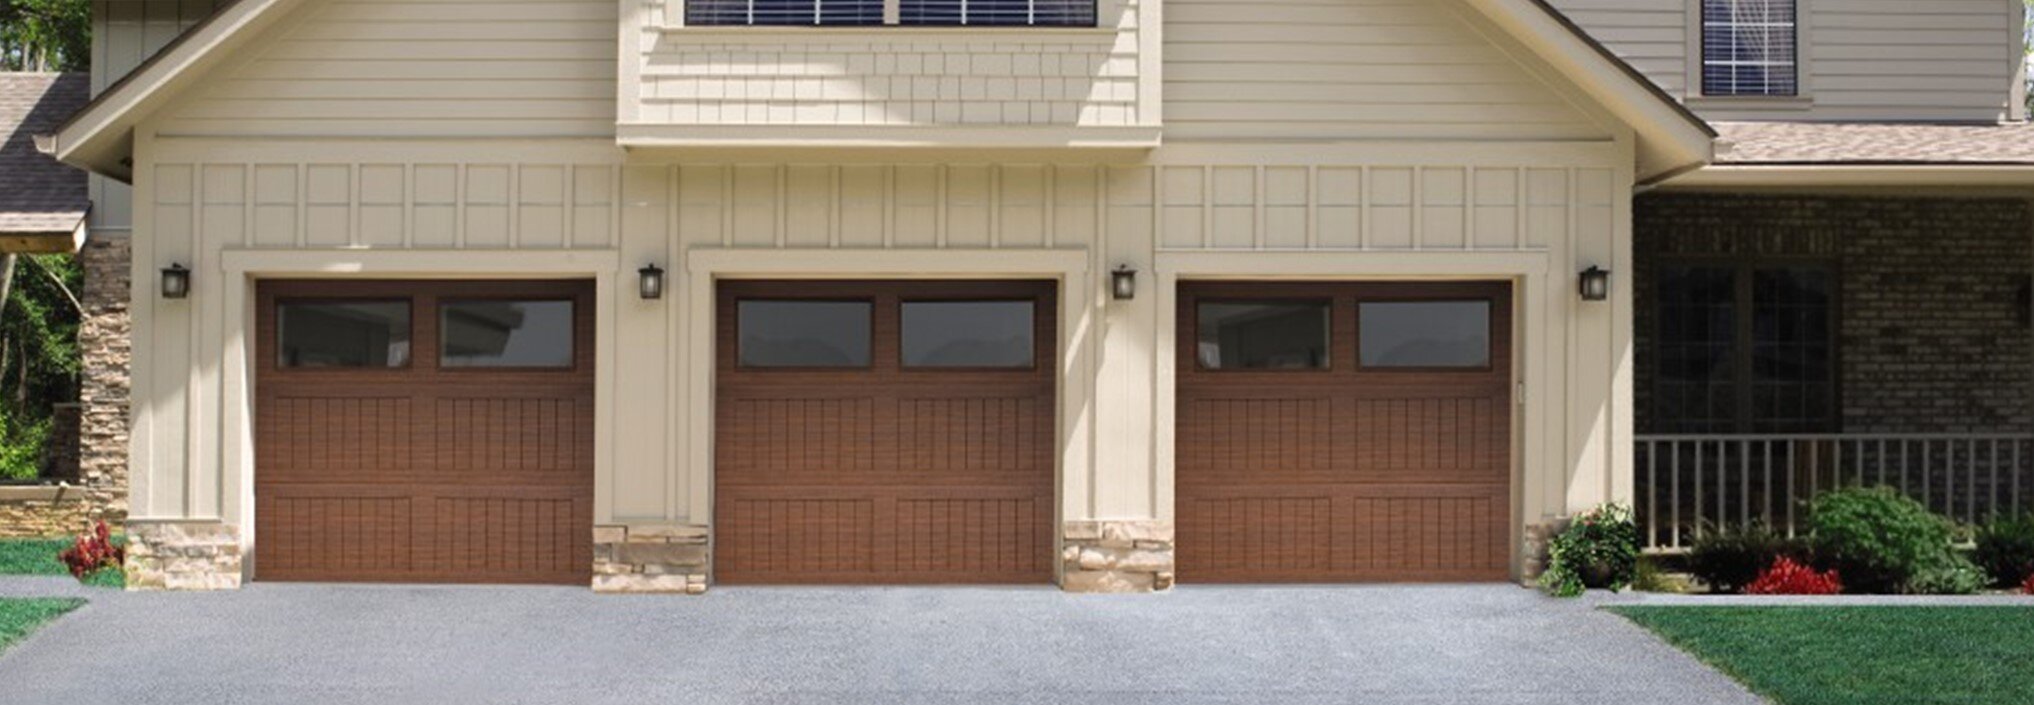 Impression Steel Garage Doors - Overhead Door of Grand Island